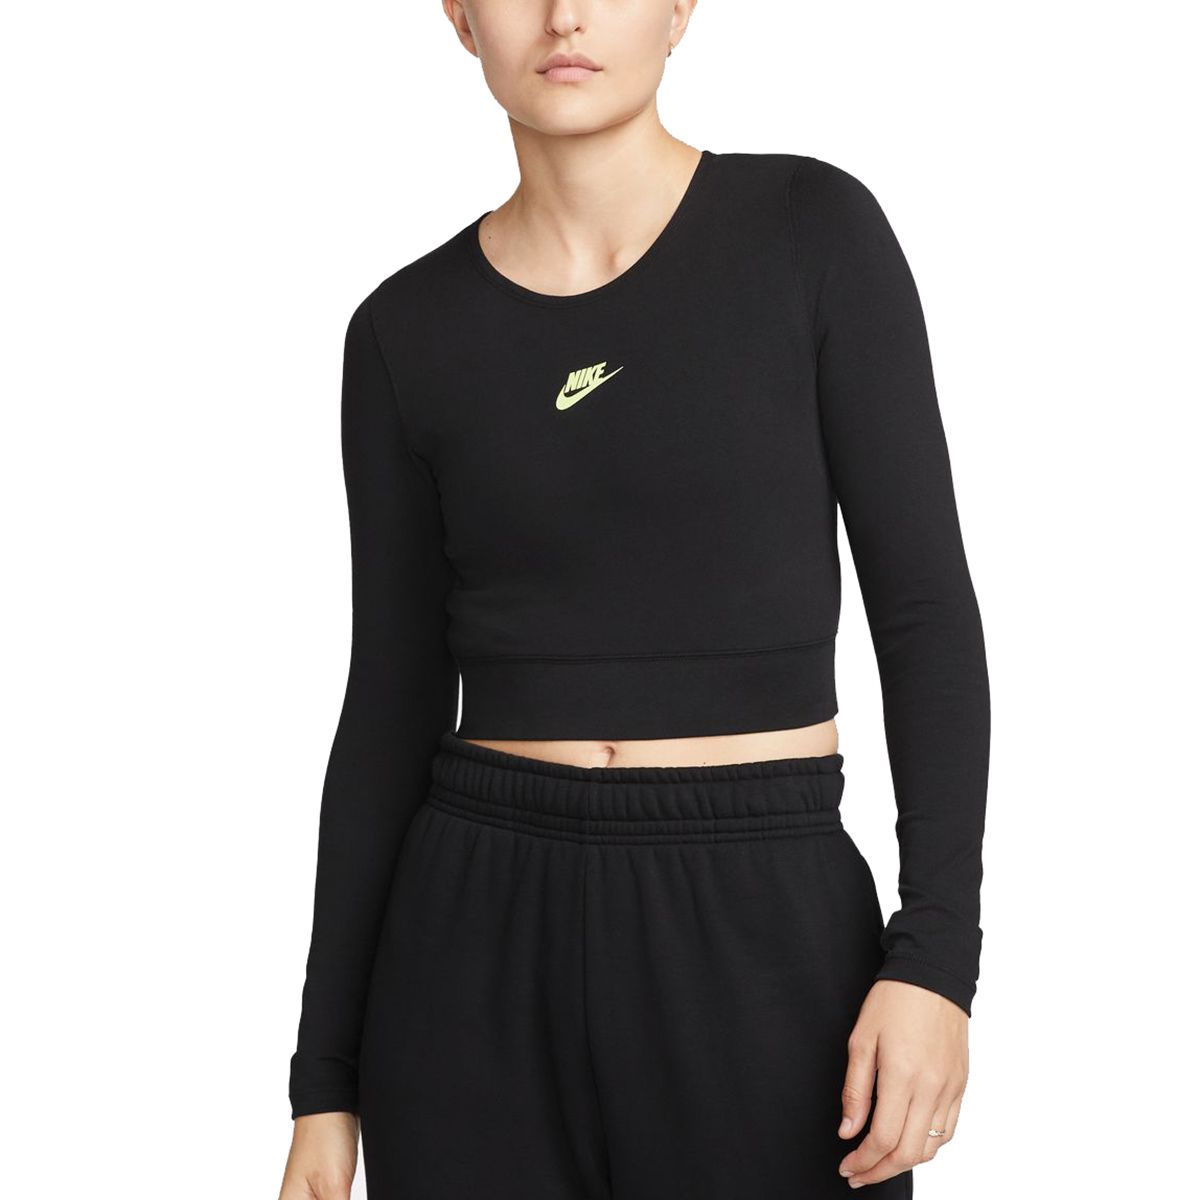 Nike Sportswear Women's Long-Sleeve Dance Crop Top DZ4608-01